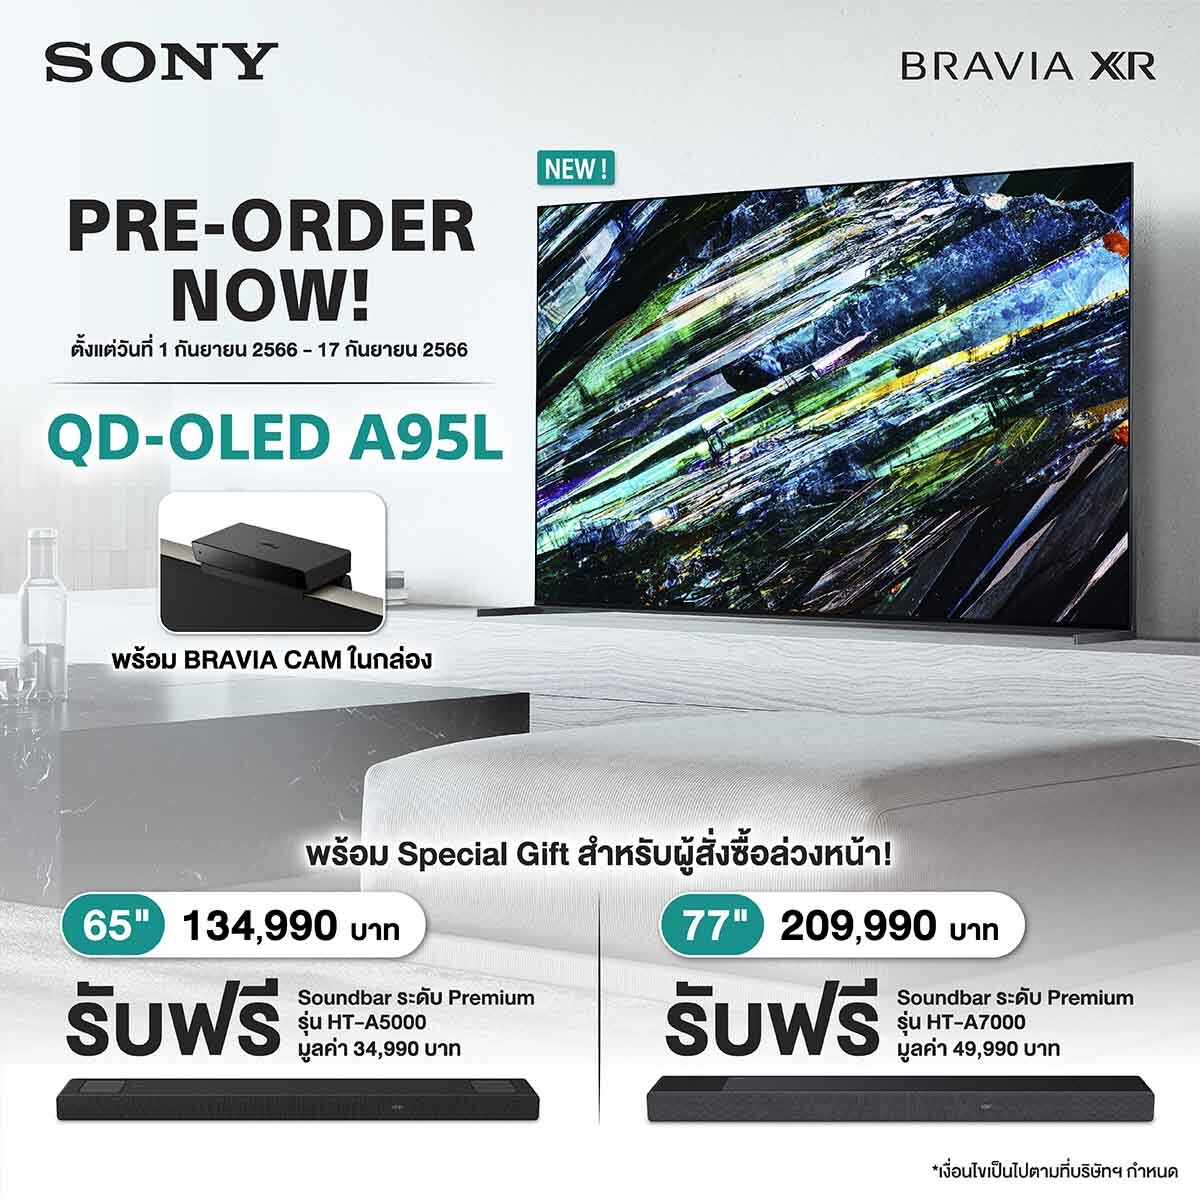 โซนี่ไทยพร้อมเปิดจองทีวีบราเวียรุ่นล่าสุด BRAVIA XR 4K HDR QD-OLED TV ซีรี่ส์ A95L เพิ่มประสิทธิภาพความสว่างของสีด้วยจอแสดงผล QD-OLED